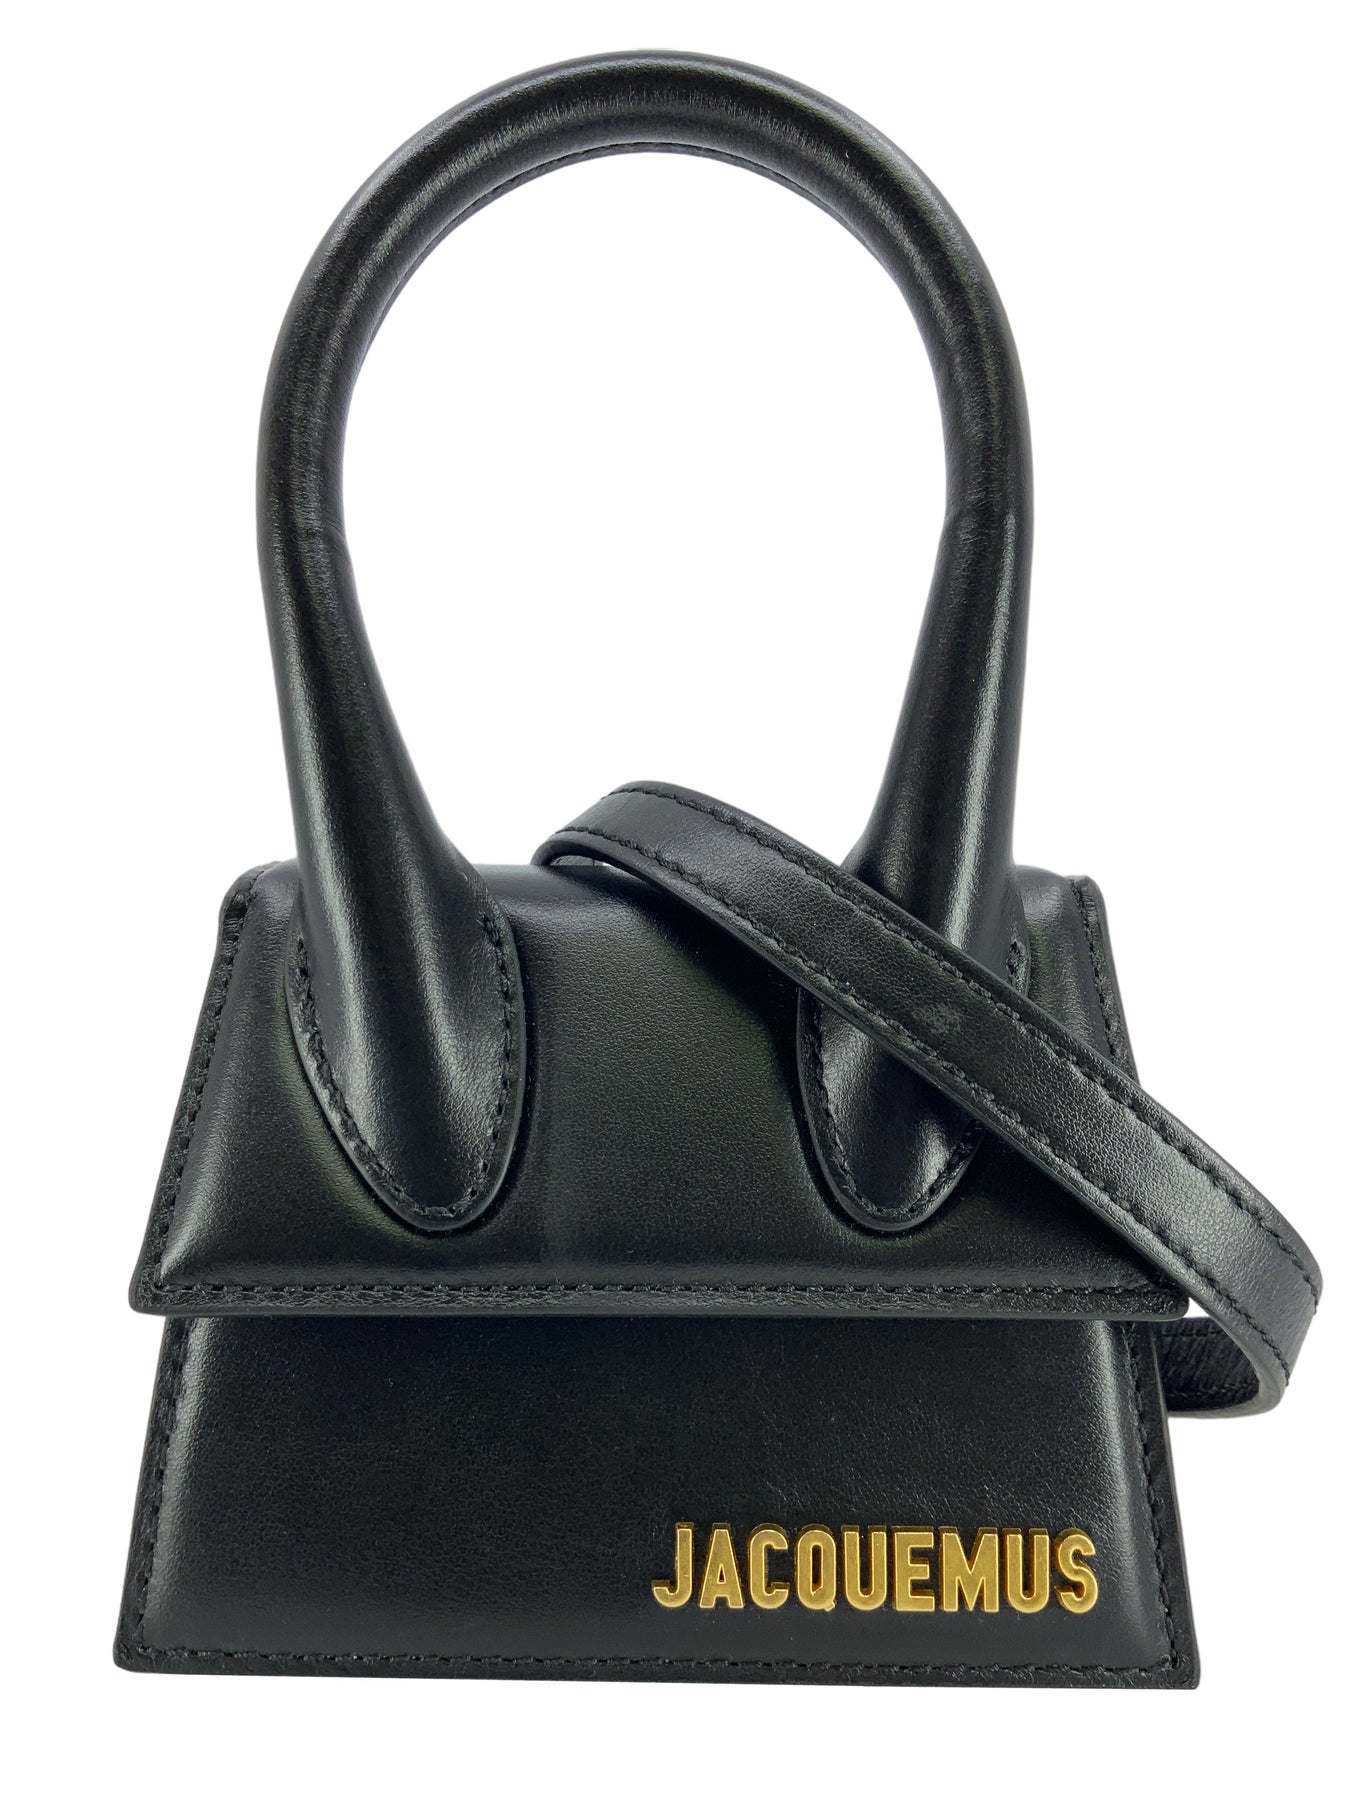 Jacquemus Medium Leather Le Chiquito Top-Handle Bag